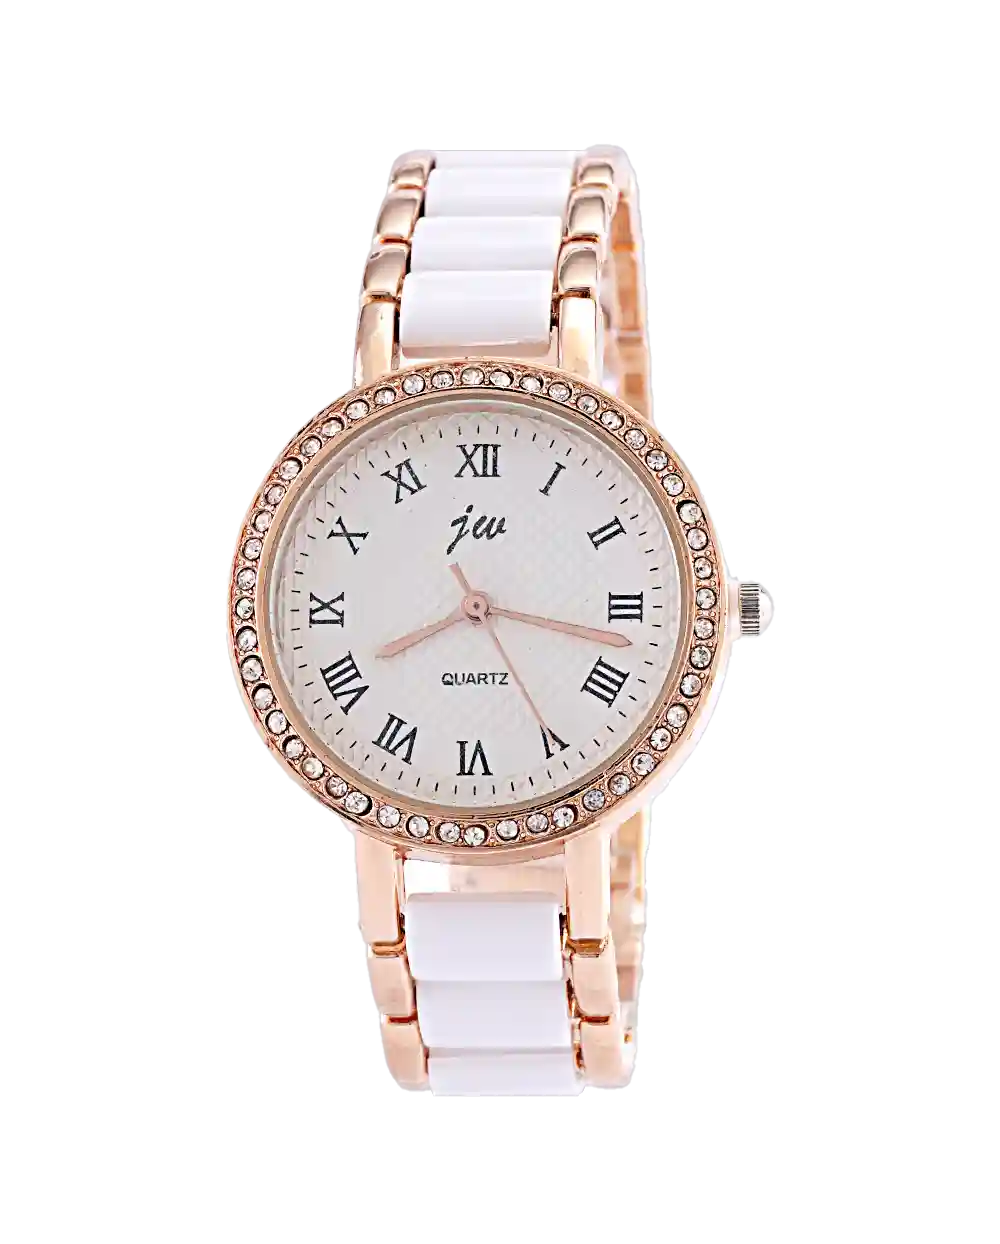 قیمت و خرید ساعت مچی زنانه IW TIME مدل 1577 همراه با ارسال رایگان و جعبه ی مخصوص کادو | ساعت دستبندی زنانه